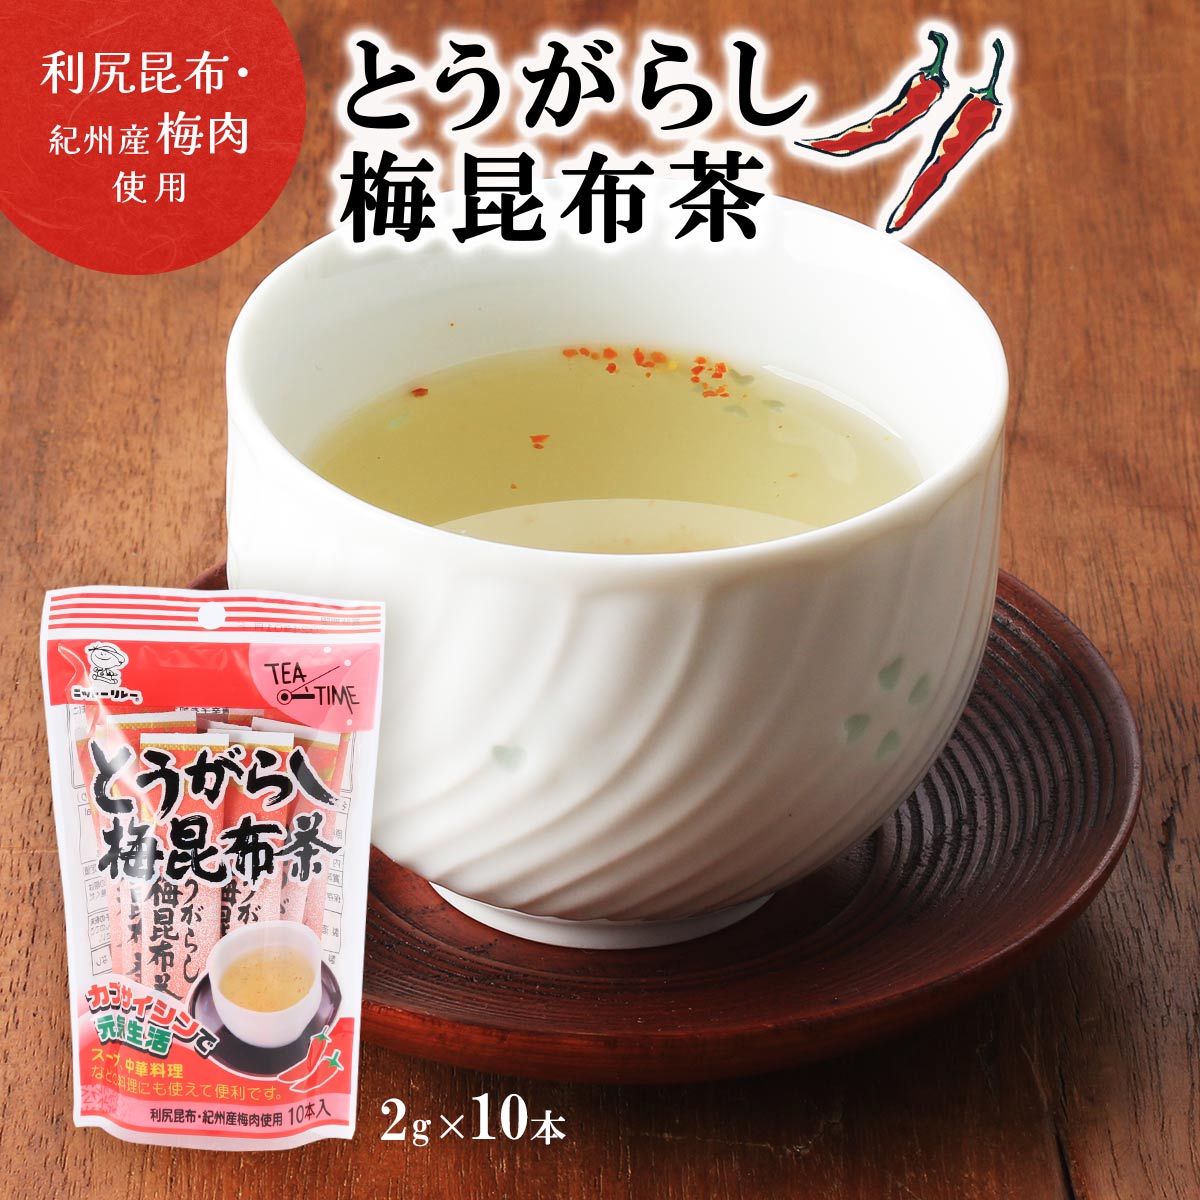 [日東食品工業] 茶 とうがらし梅昆布茶 20g(2g×10本)/こんぶ茶/唐辛子/カプサイシン/隠し味/スープ/パスタ/中華料理/昆布茶